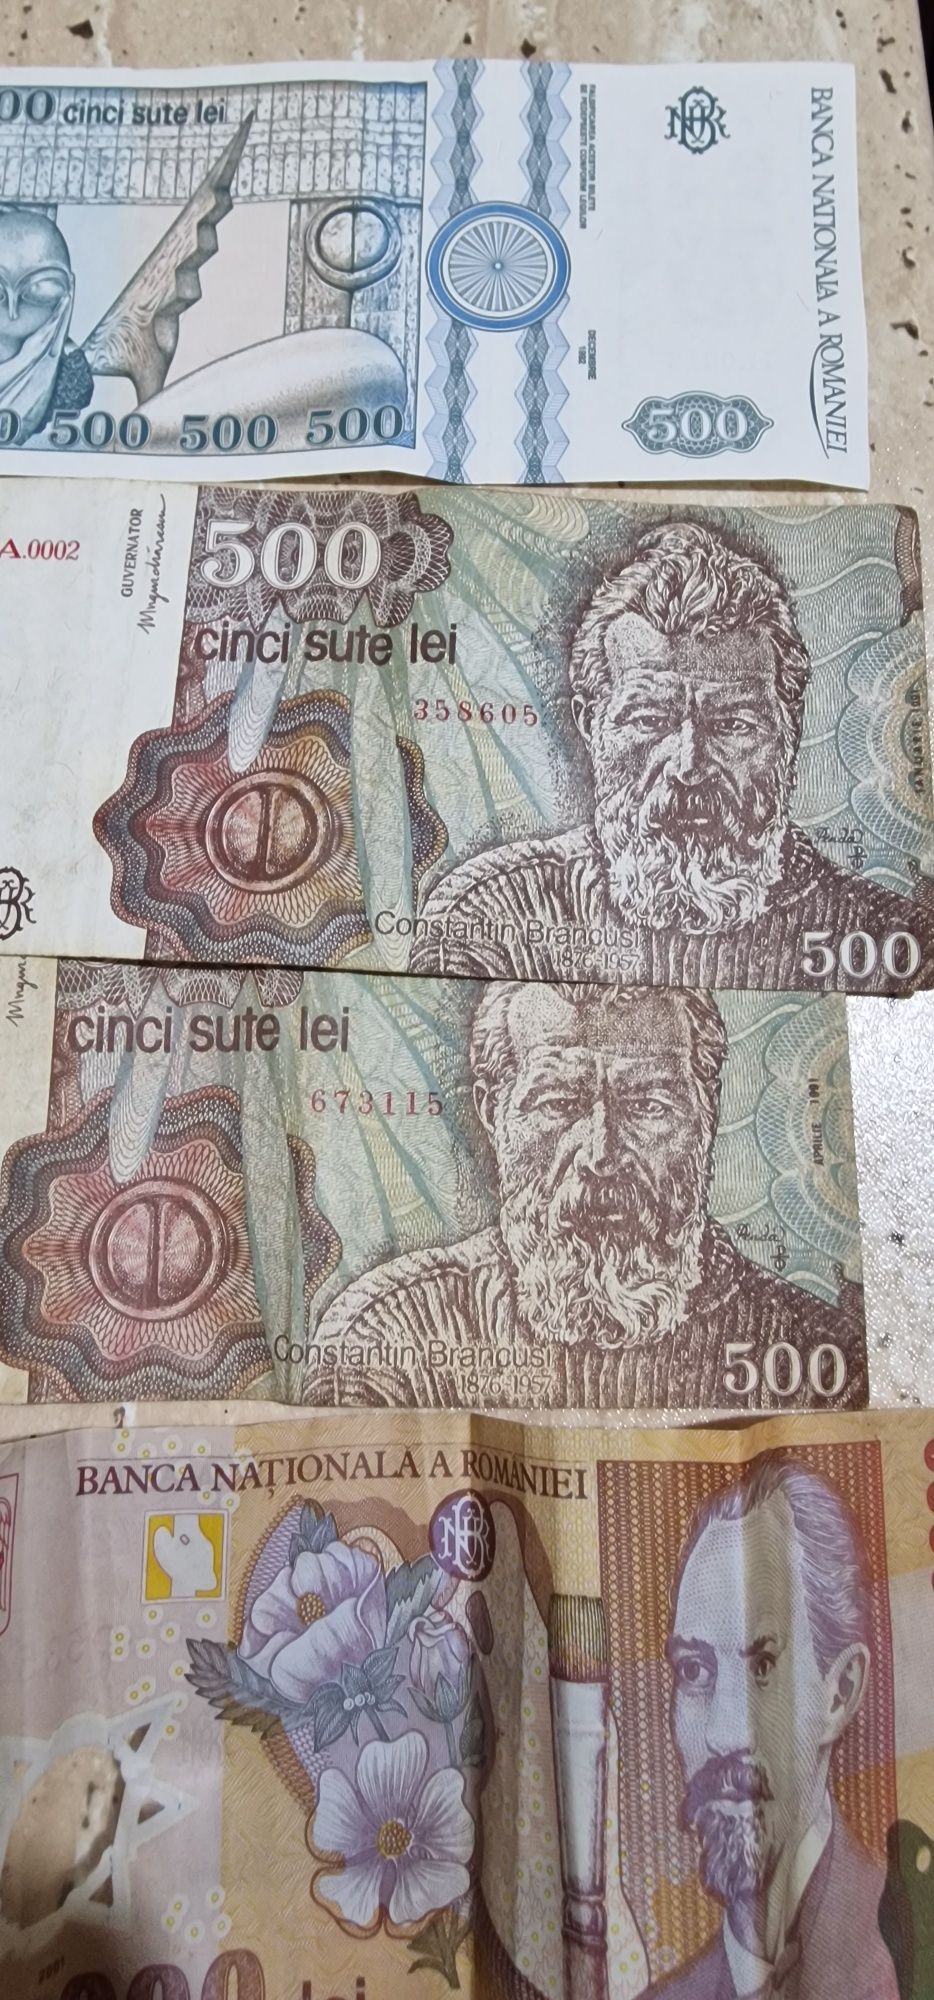 De vânzare bancnote și monede vechi
6 bancnote Ctin Brâncuși din decem